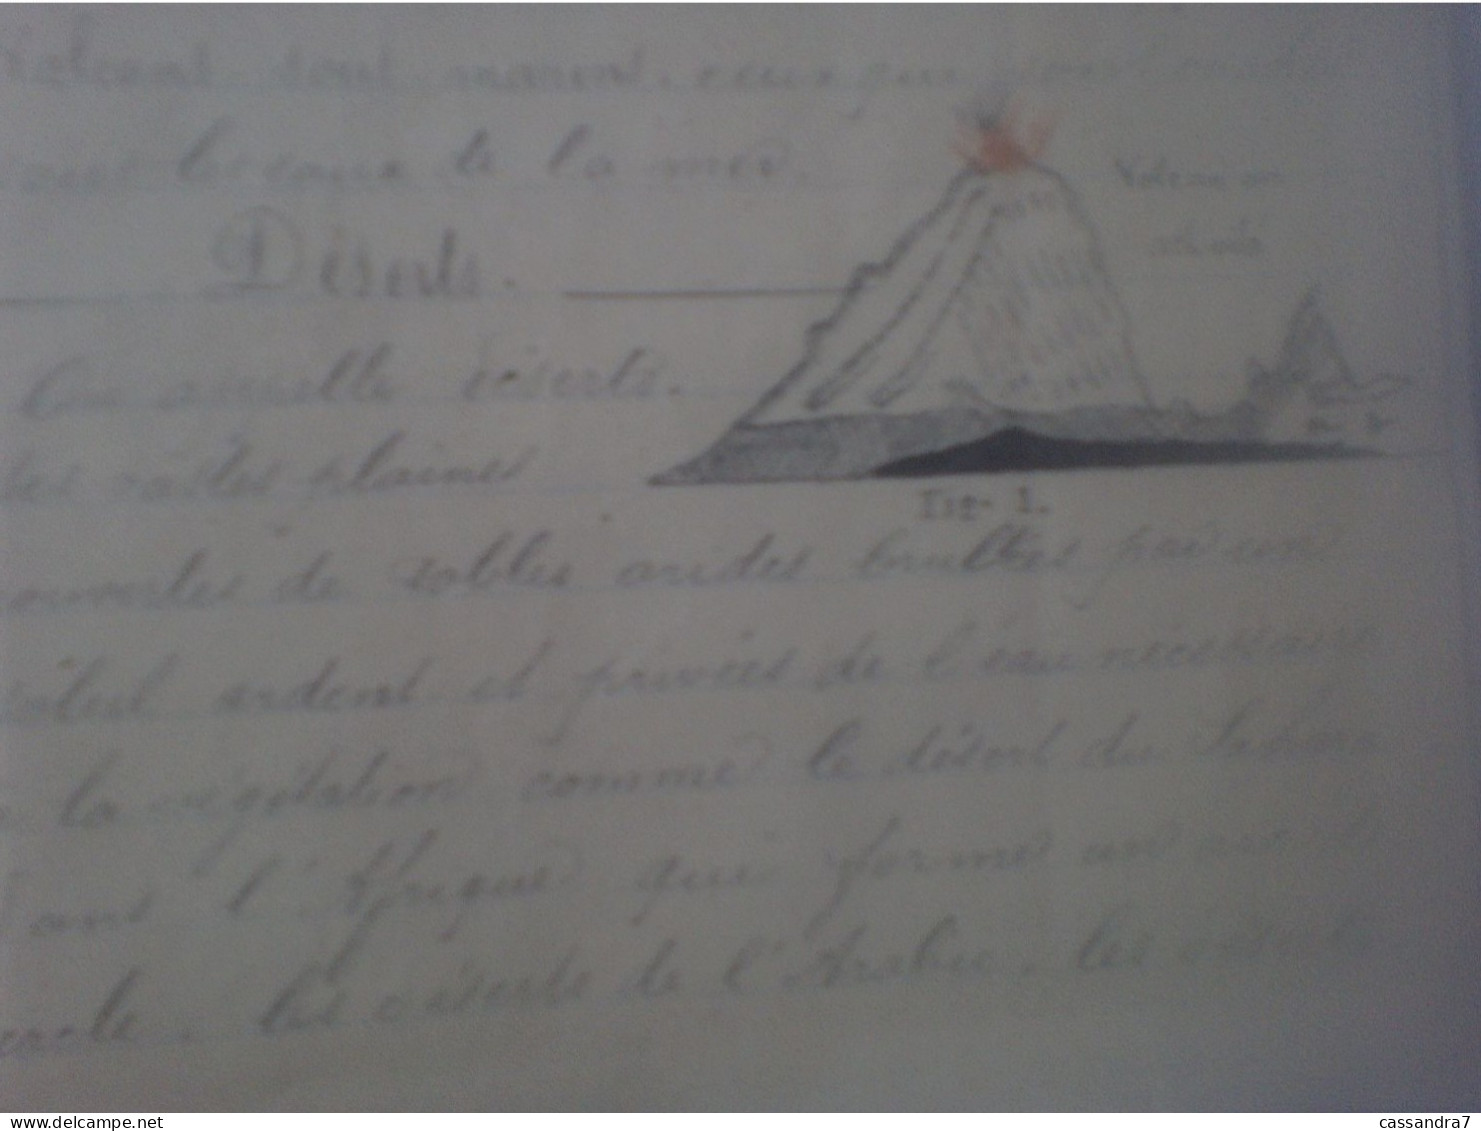 Scolaire - Carnet de Géographie à Lafargue Aramis acheté le 8 Décembre 1876 avec cartes et dessins manuscrits